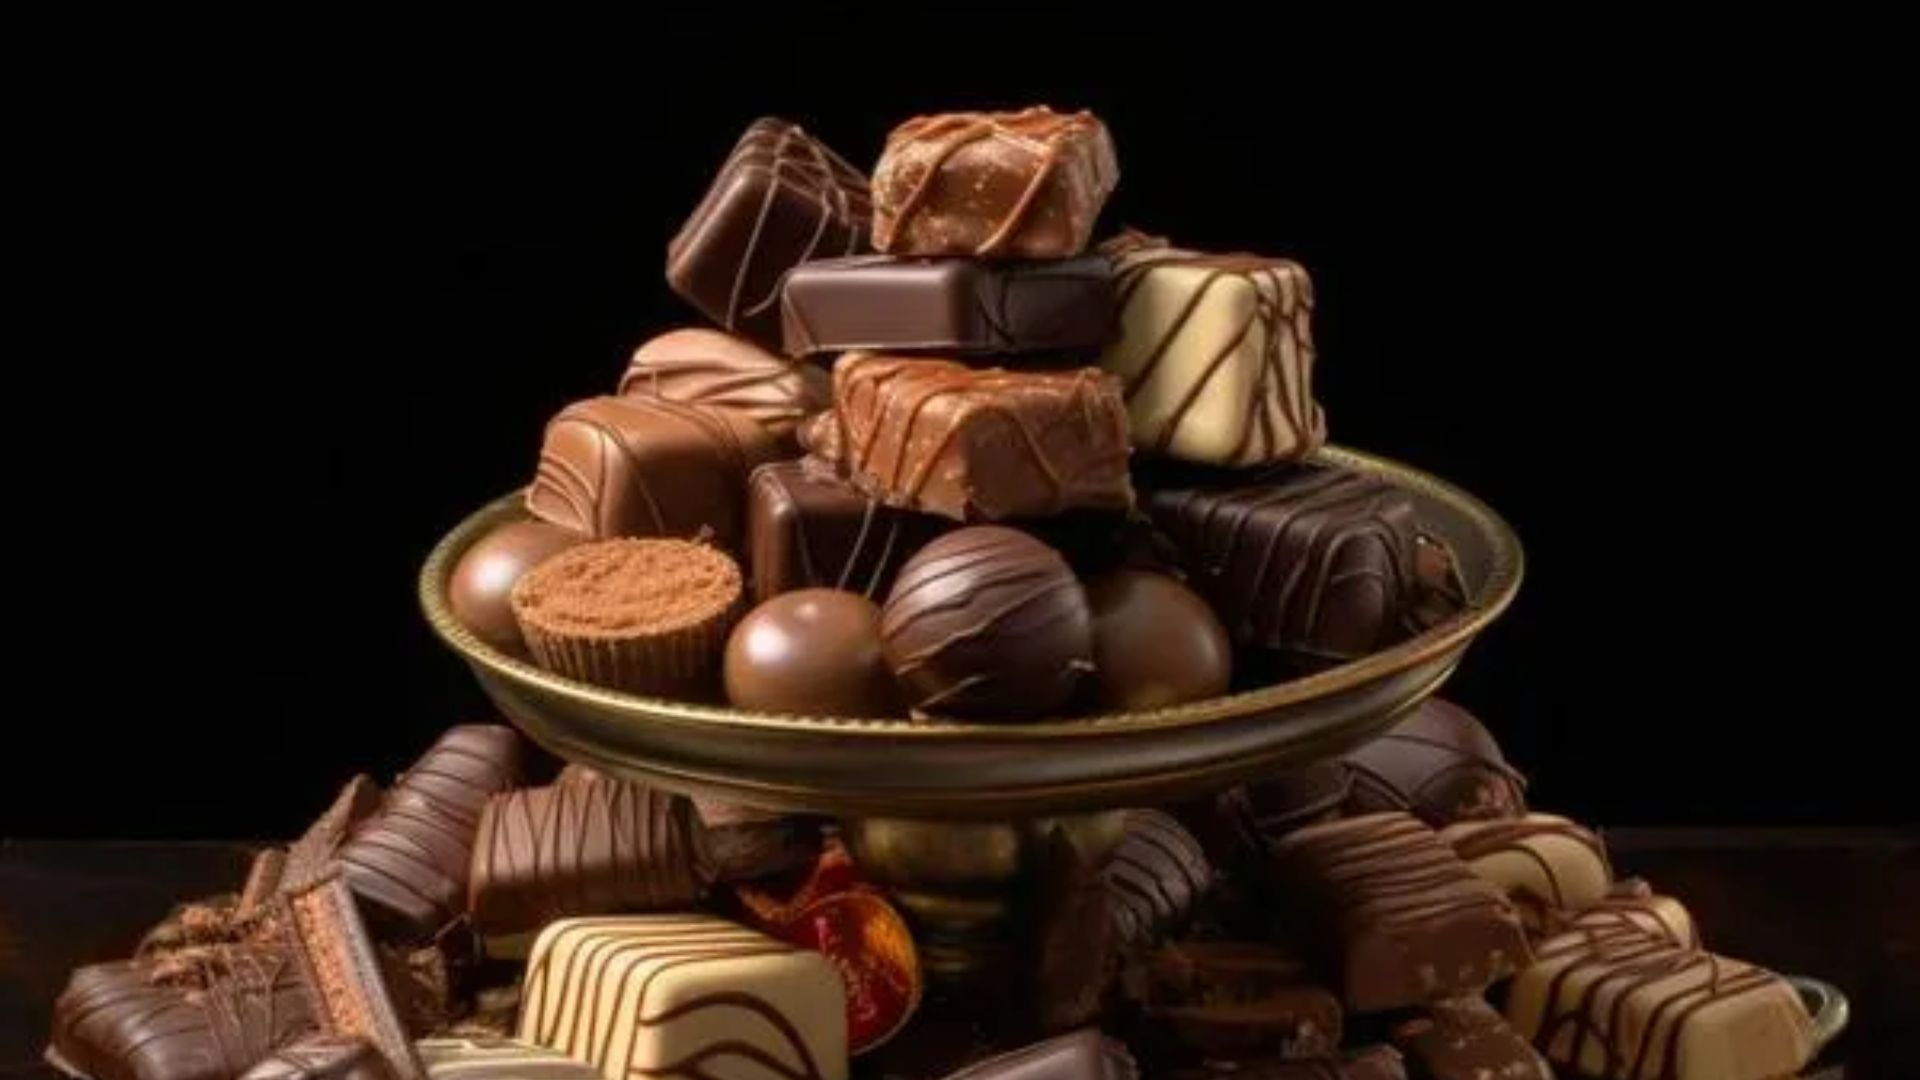 Imagen de chocolates por subida de precios